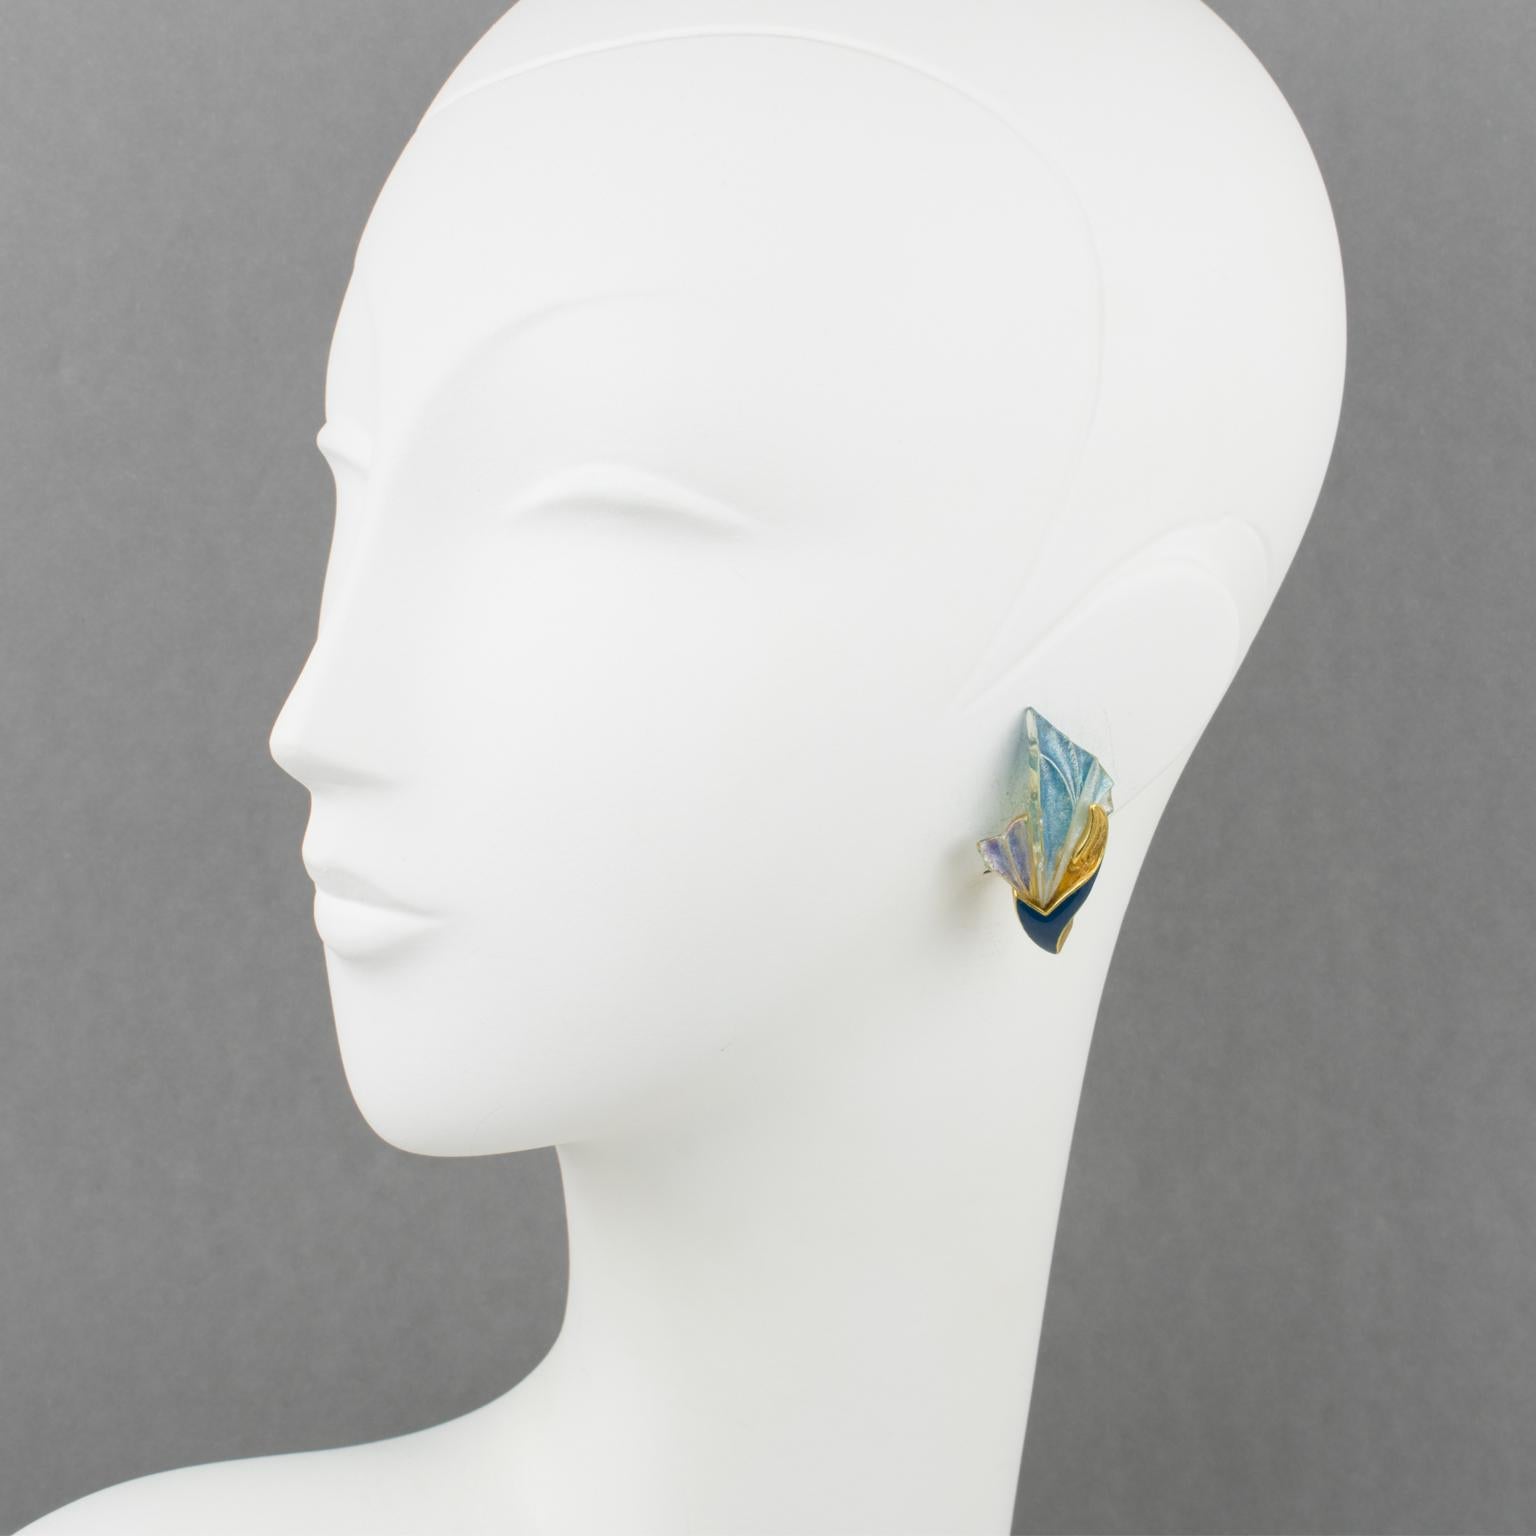 Ces élégantes boucles d'oreilles clipsables Emanuel Ungaro Paris présentent une forme florale en métal doré d'inspiration Art-Nouveau. Le cadre métallique est recouvert d'un émail bleu cobalt et complété par un éventail en résine irisée. L'éventail